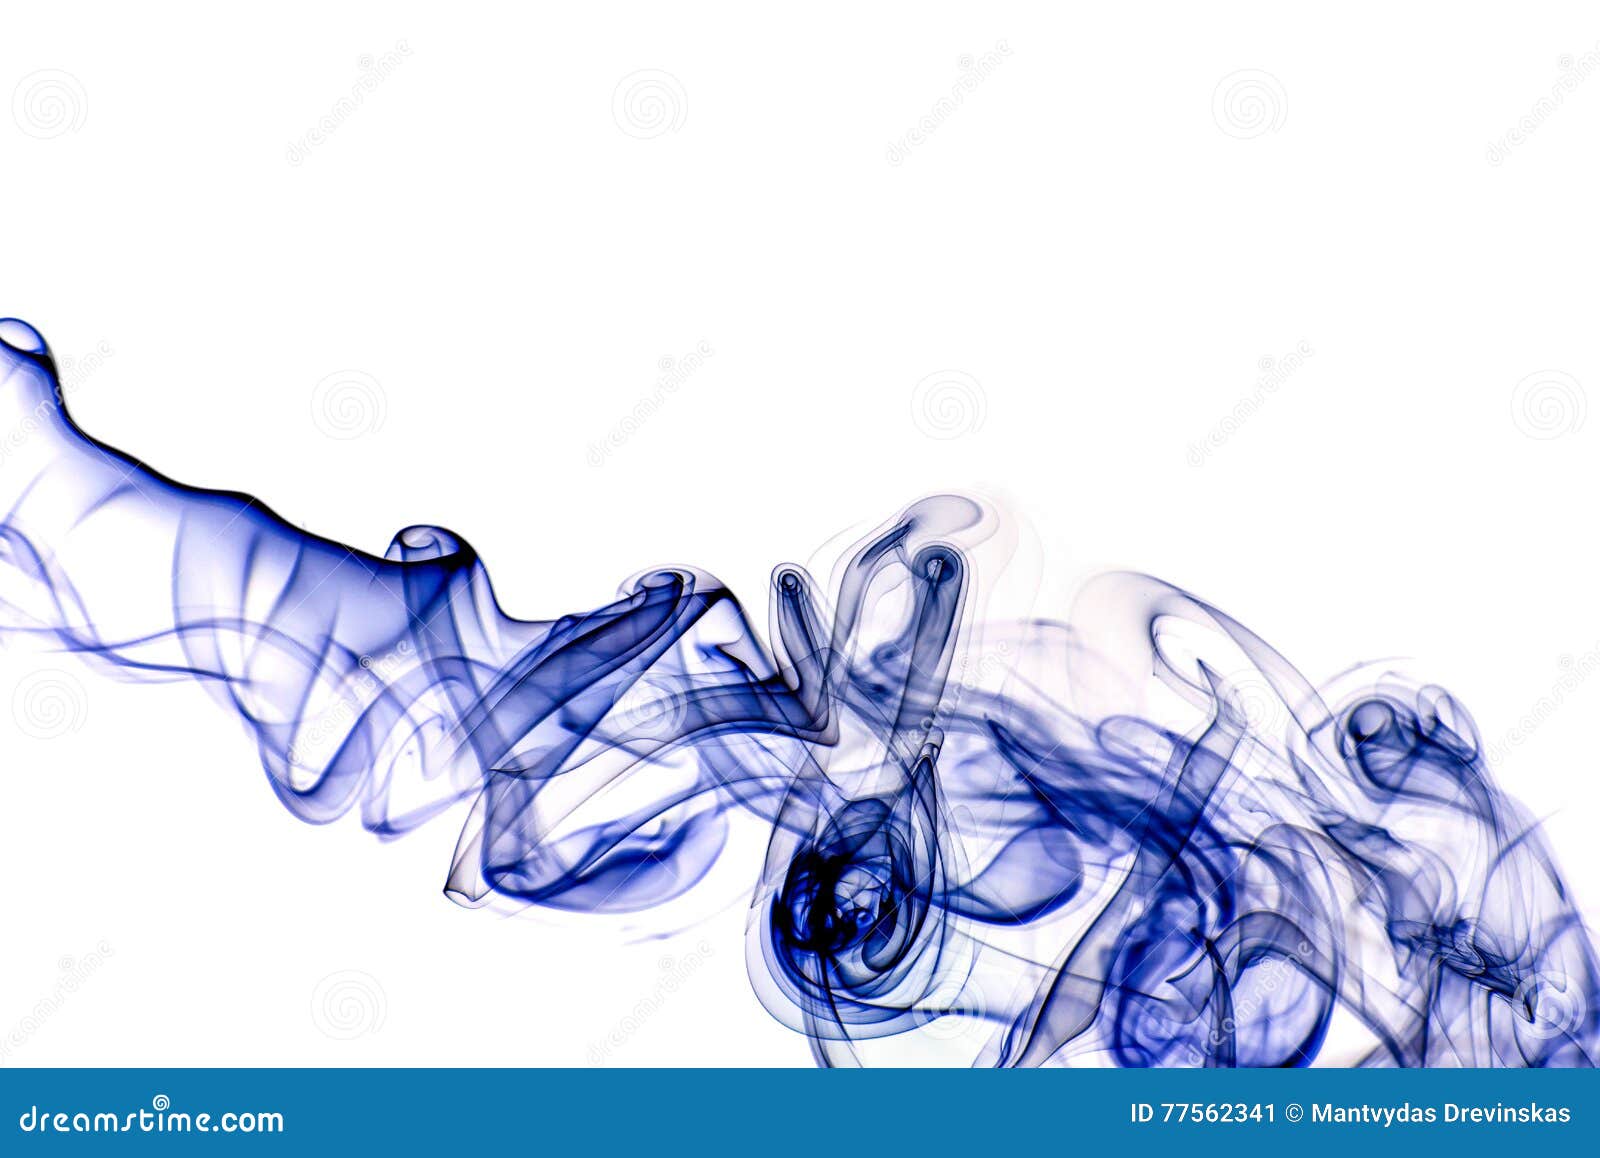 Blue smoke stock image. Image of smoke, form, abstract - 77562341